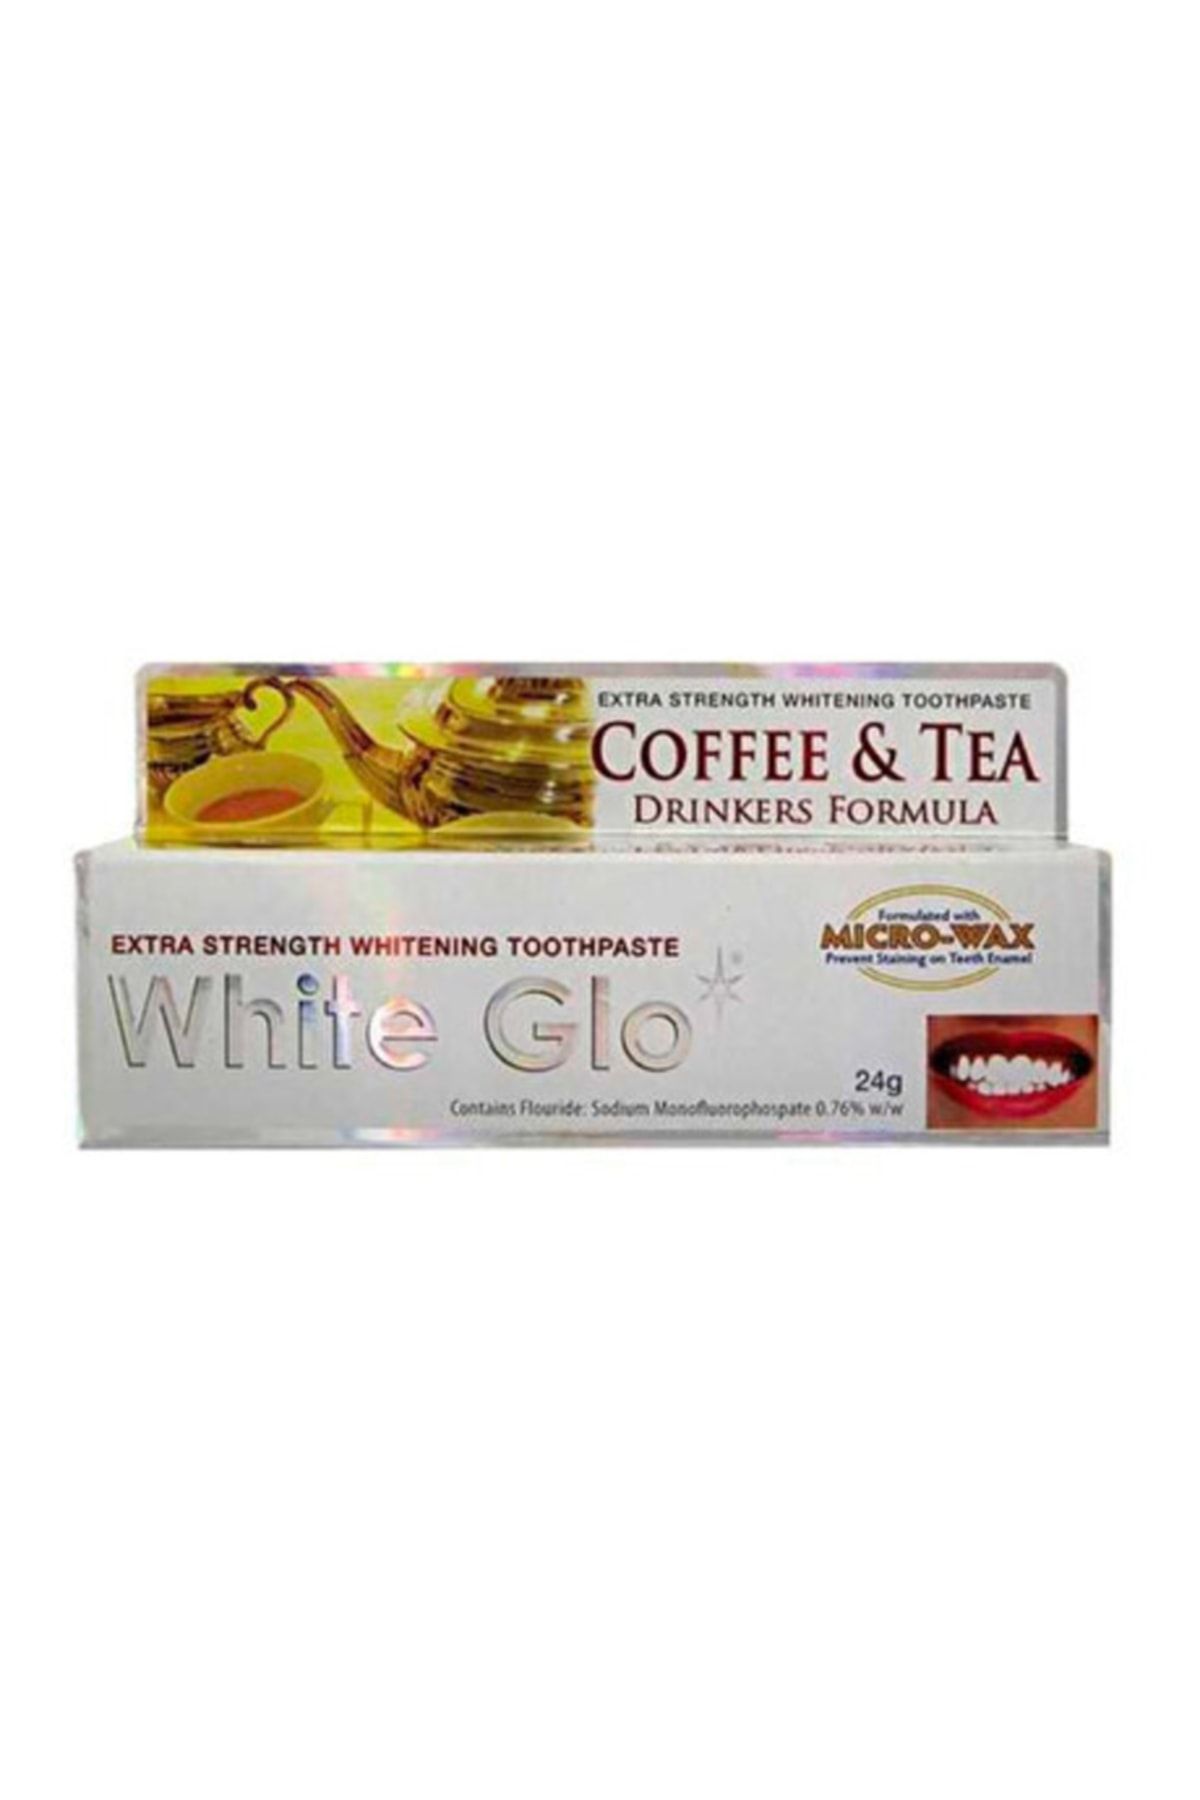 White Glo Marka: Diş Macunu Kahve Çay Tüketenler Için 24 Gr Kategori: Diş Macunu